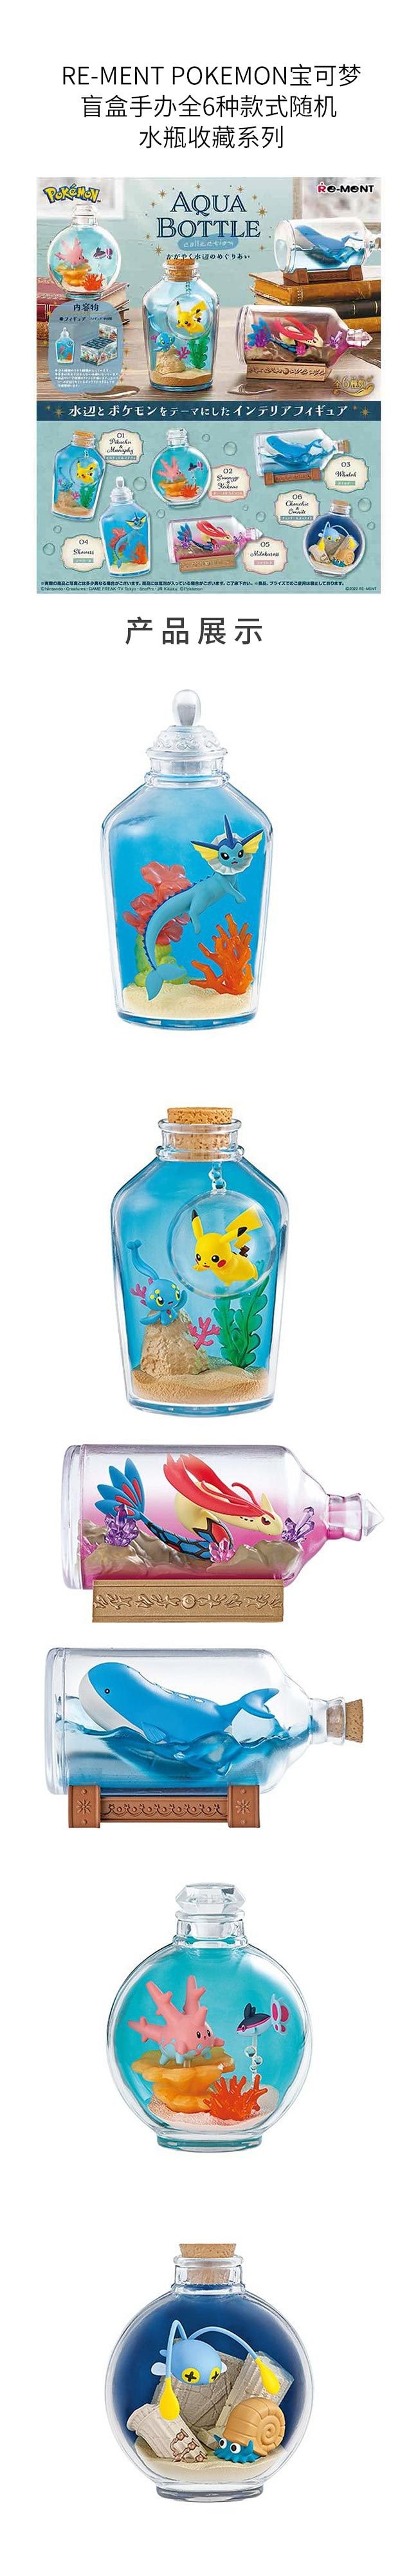 【日本直邮】Re-ment POKEMON宝可梦盲盒手办 水瓶收藏系列 款式随机